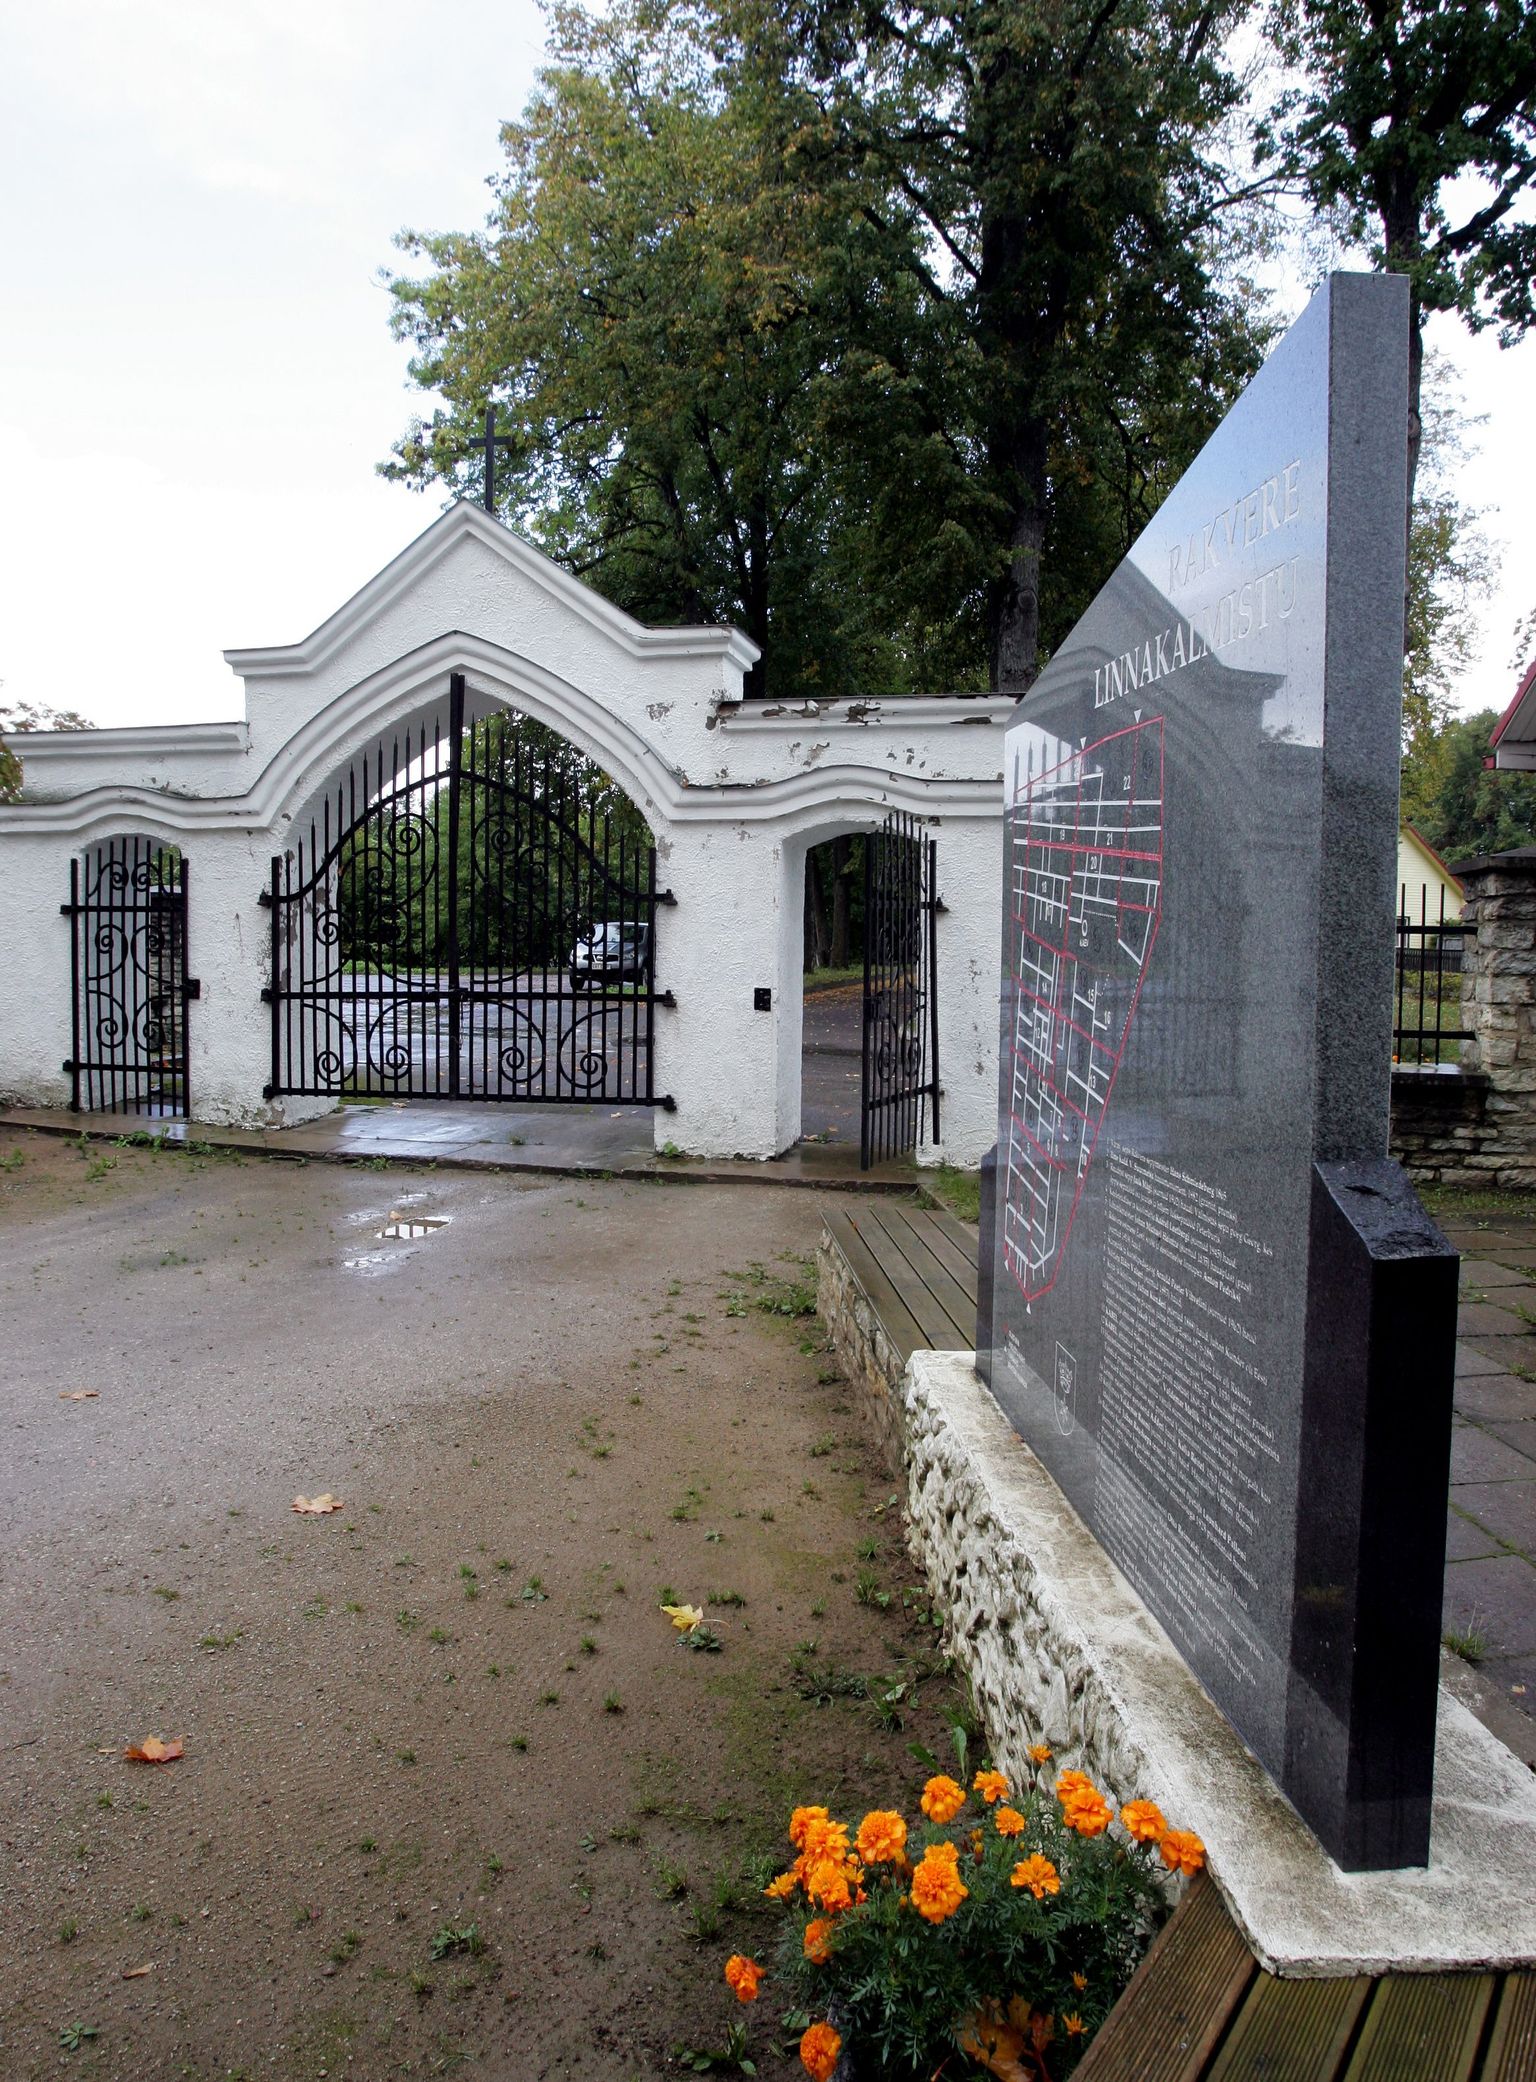 Tulevikus võib Rakvere kalmistutel toimuvat hakata koordineerima linnavalitsuse palgal olev kalmistuvaht.